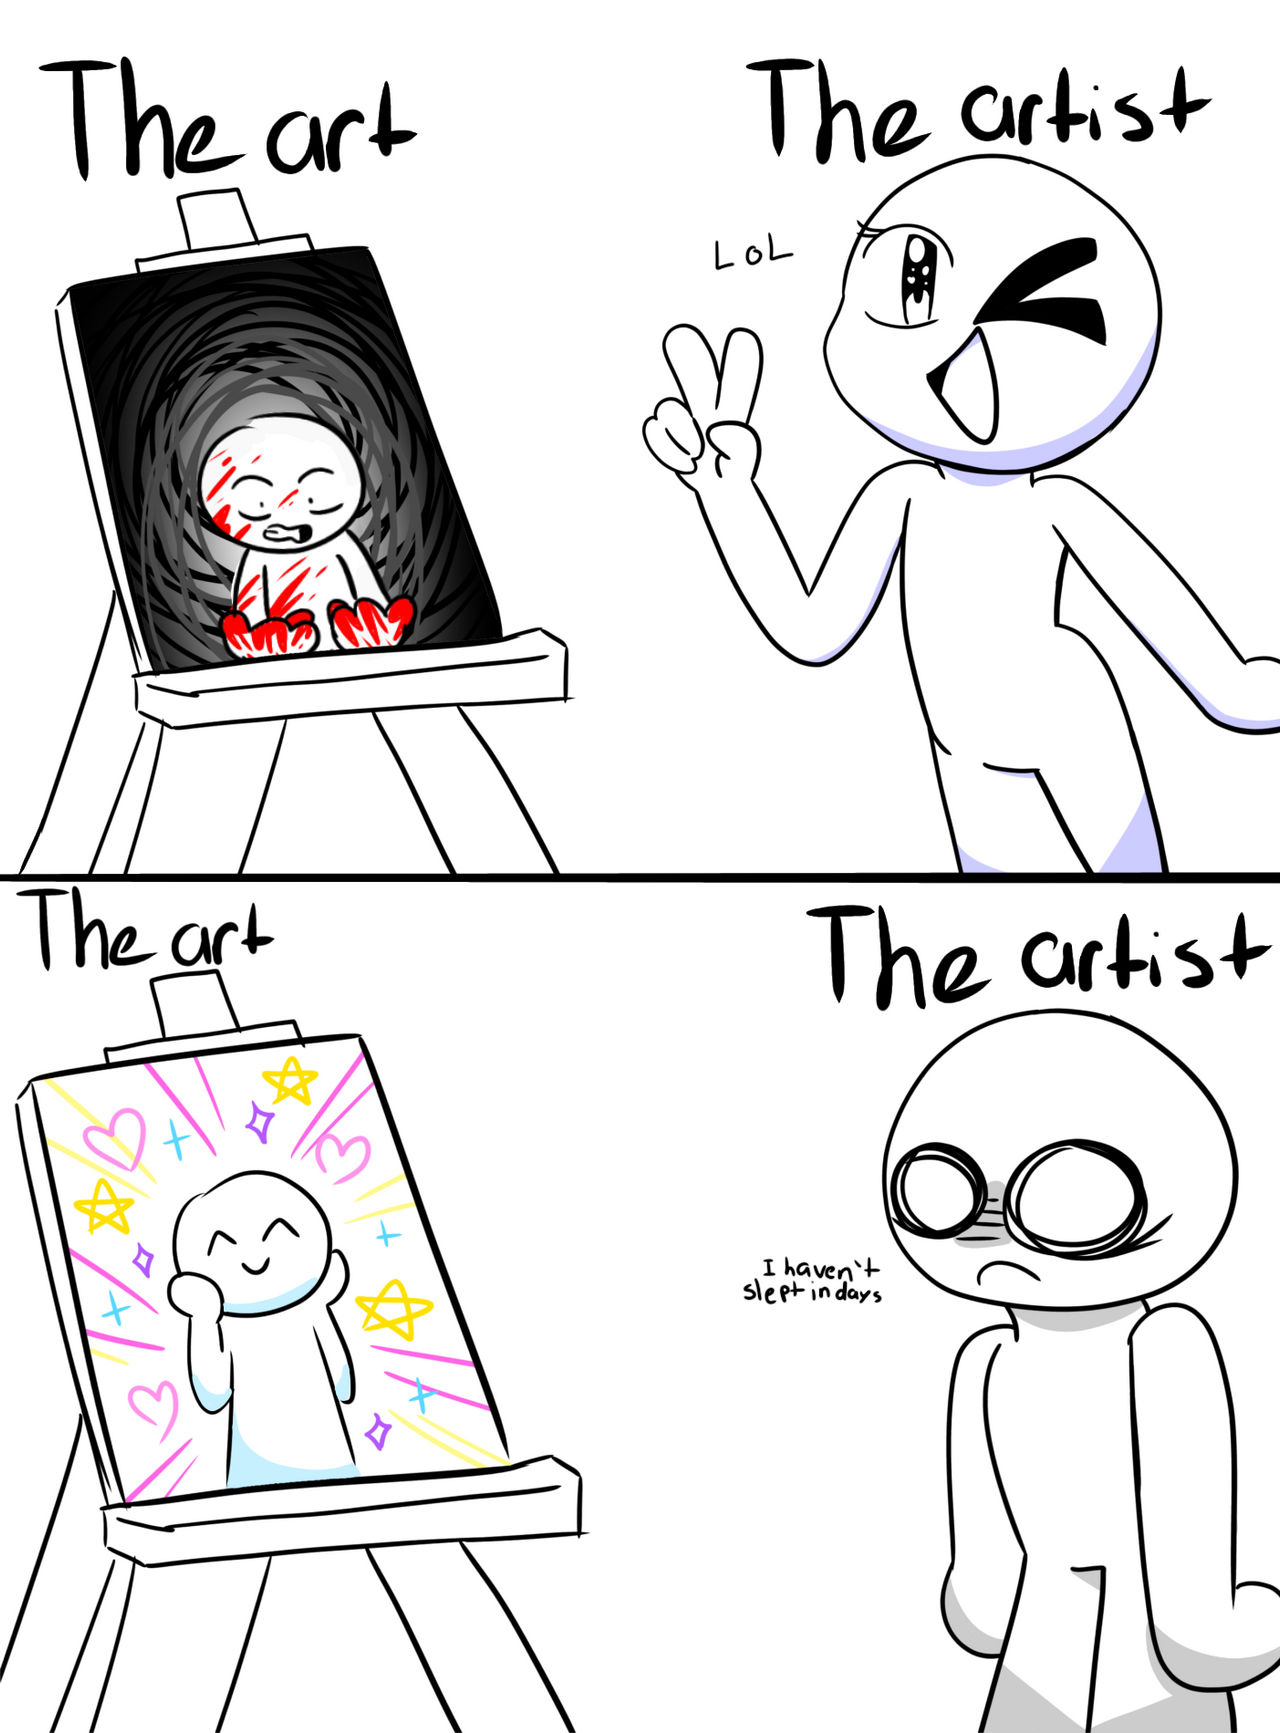 !GORE! The art vs the artist by RCKtheartist on DeviantArt